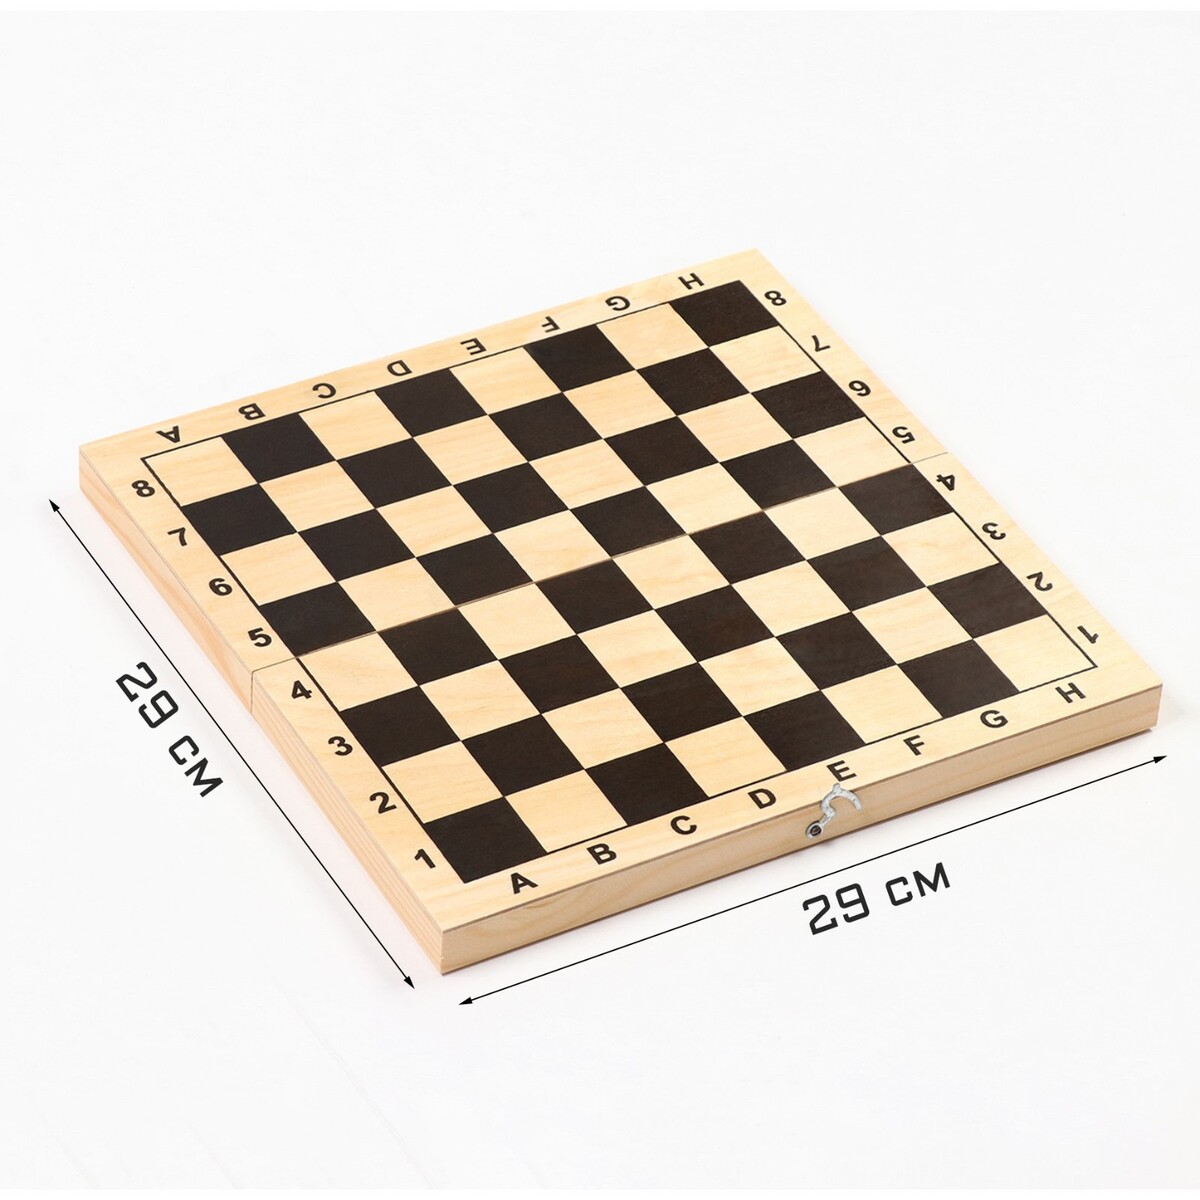 Шахматная доска обиходная, 29 х 29 х 3.5 см шахматная пьеса с антрактом на ковид турнир претендентов екатеринбург 2020 2021